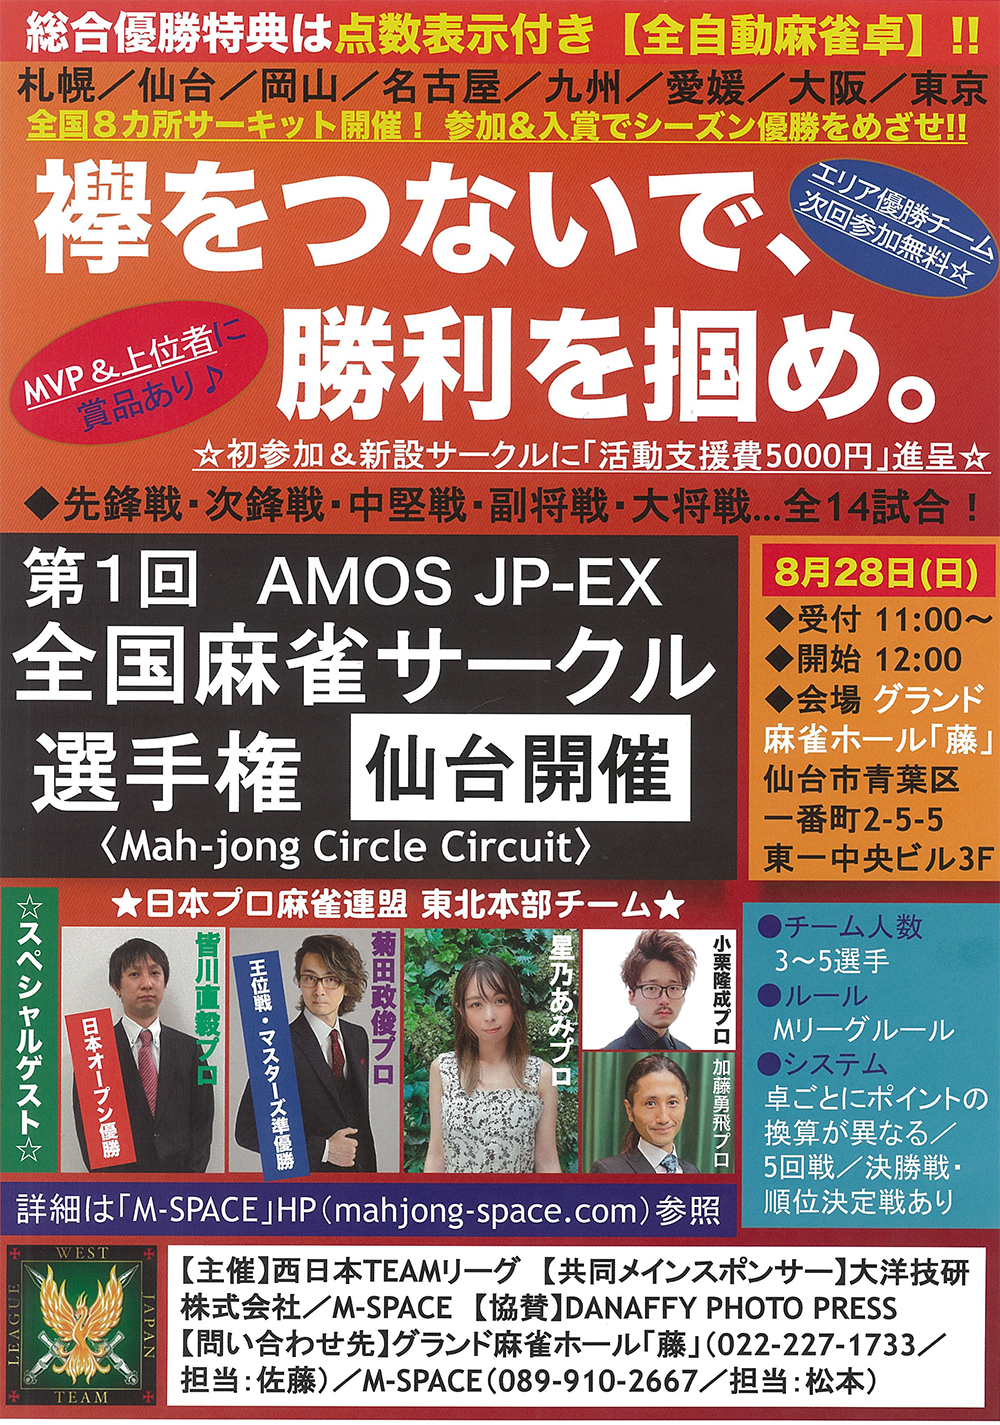 第1回AMOS JP-EX全国麻雀サークル選手権 仙台チラシ イメージ